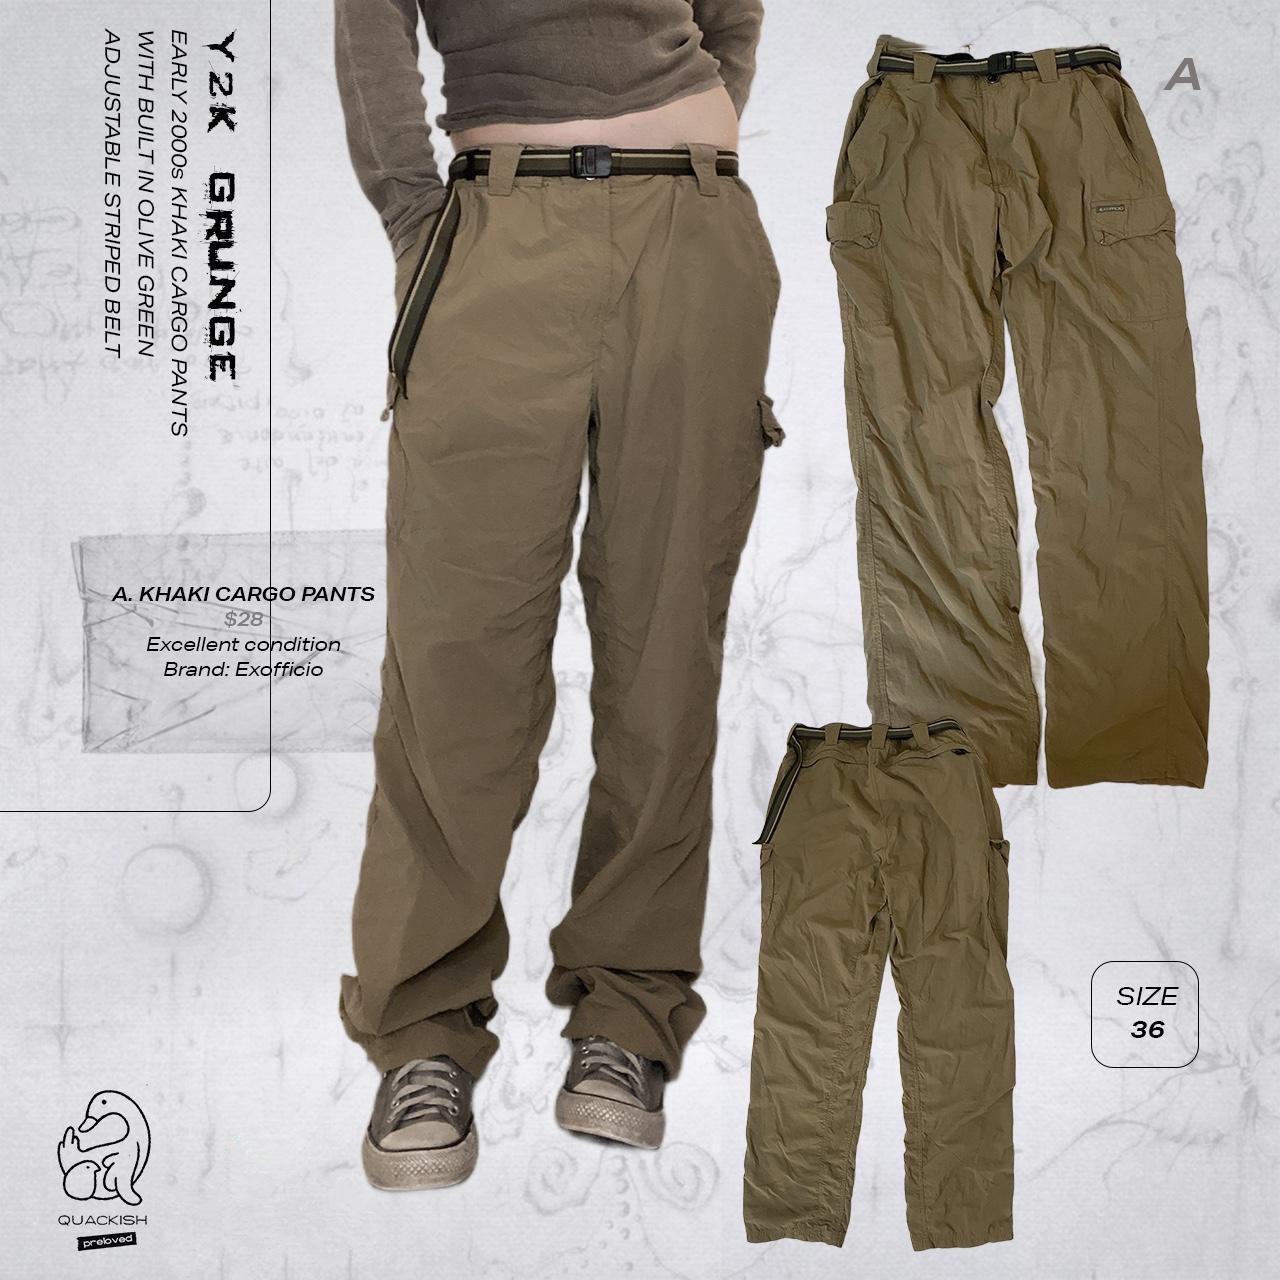 ExOfficio Men's Khaki and Tan Trousers